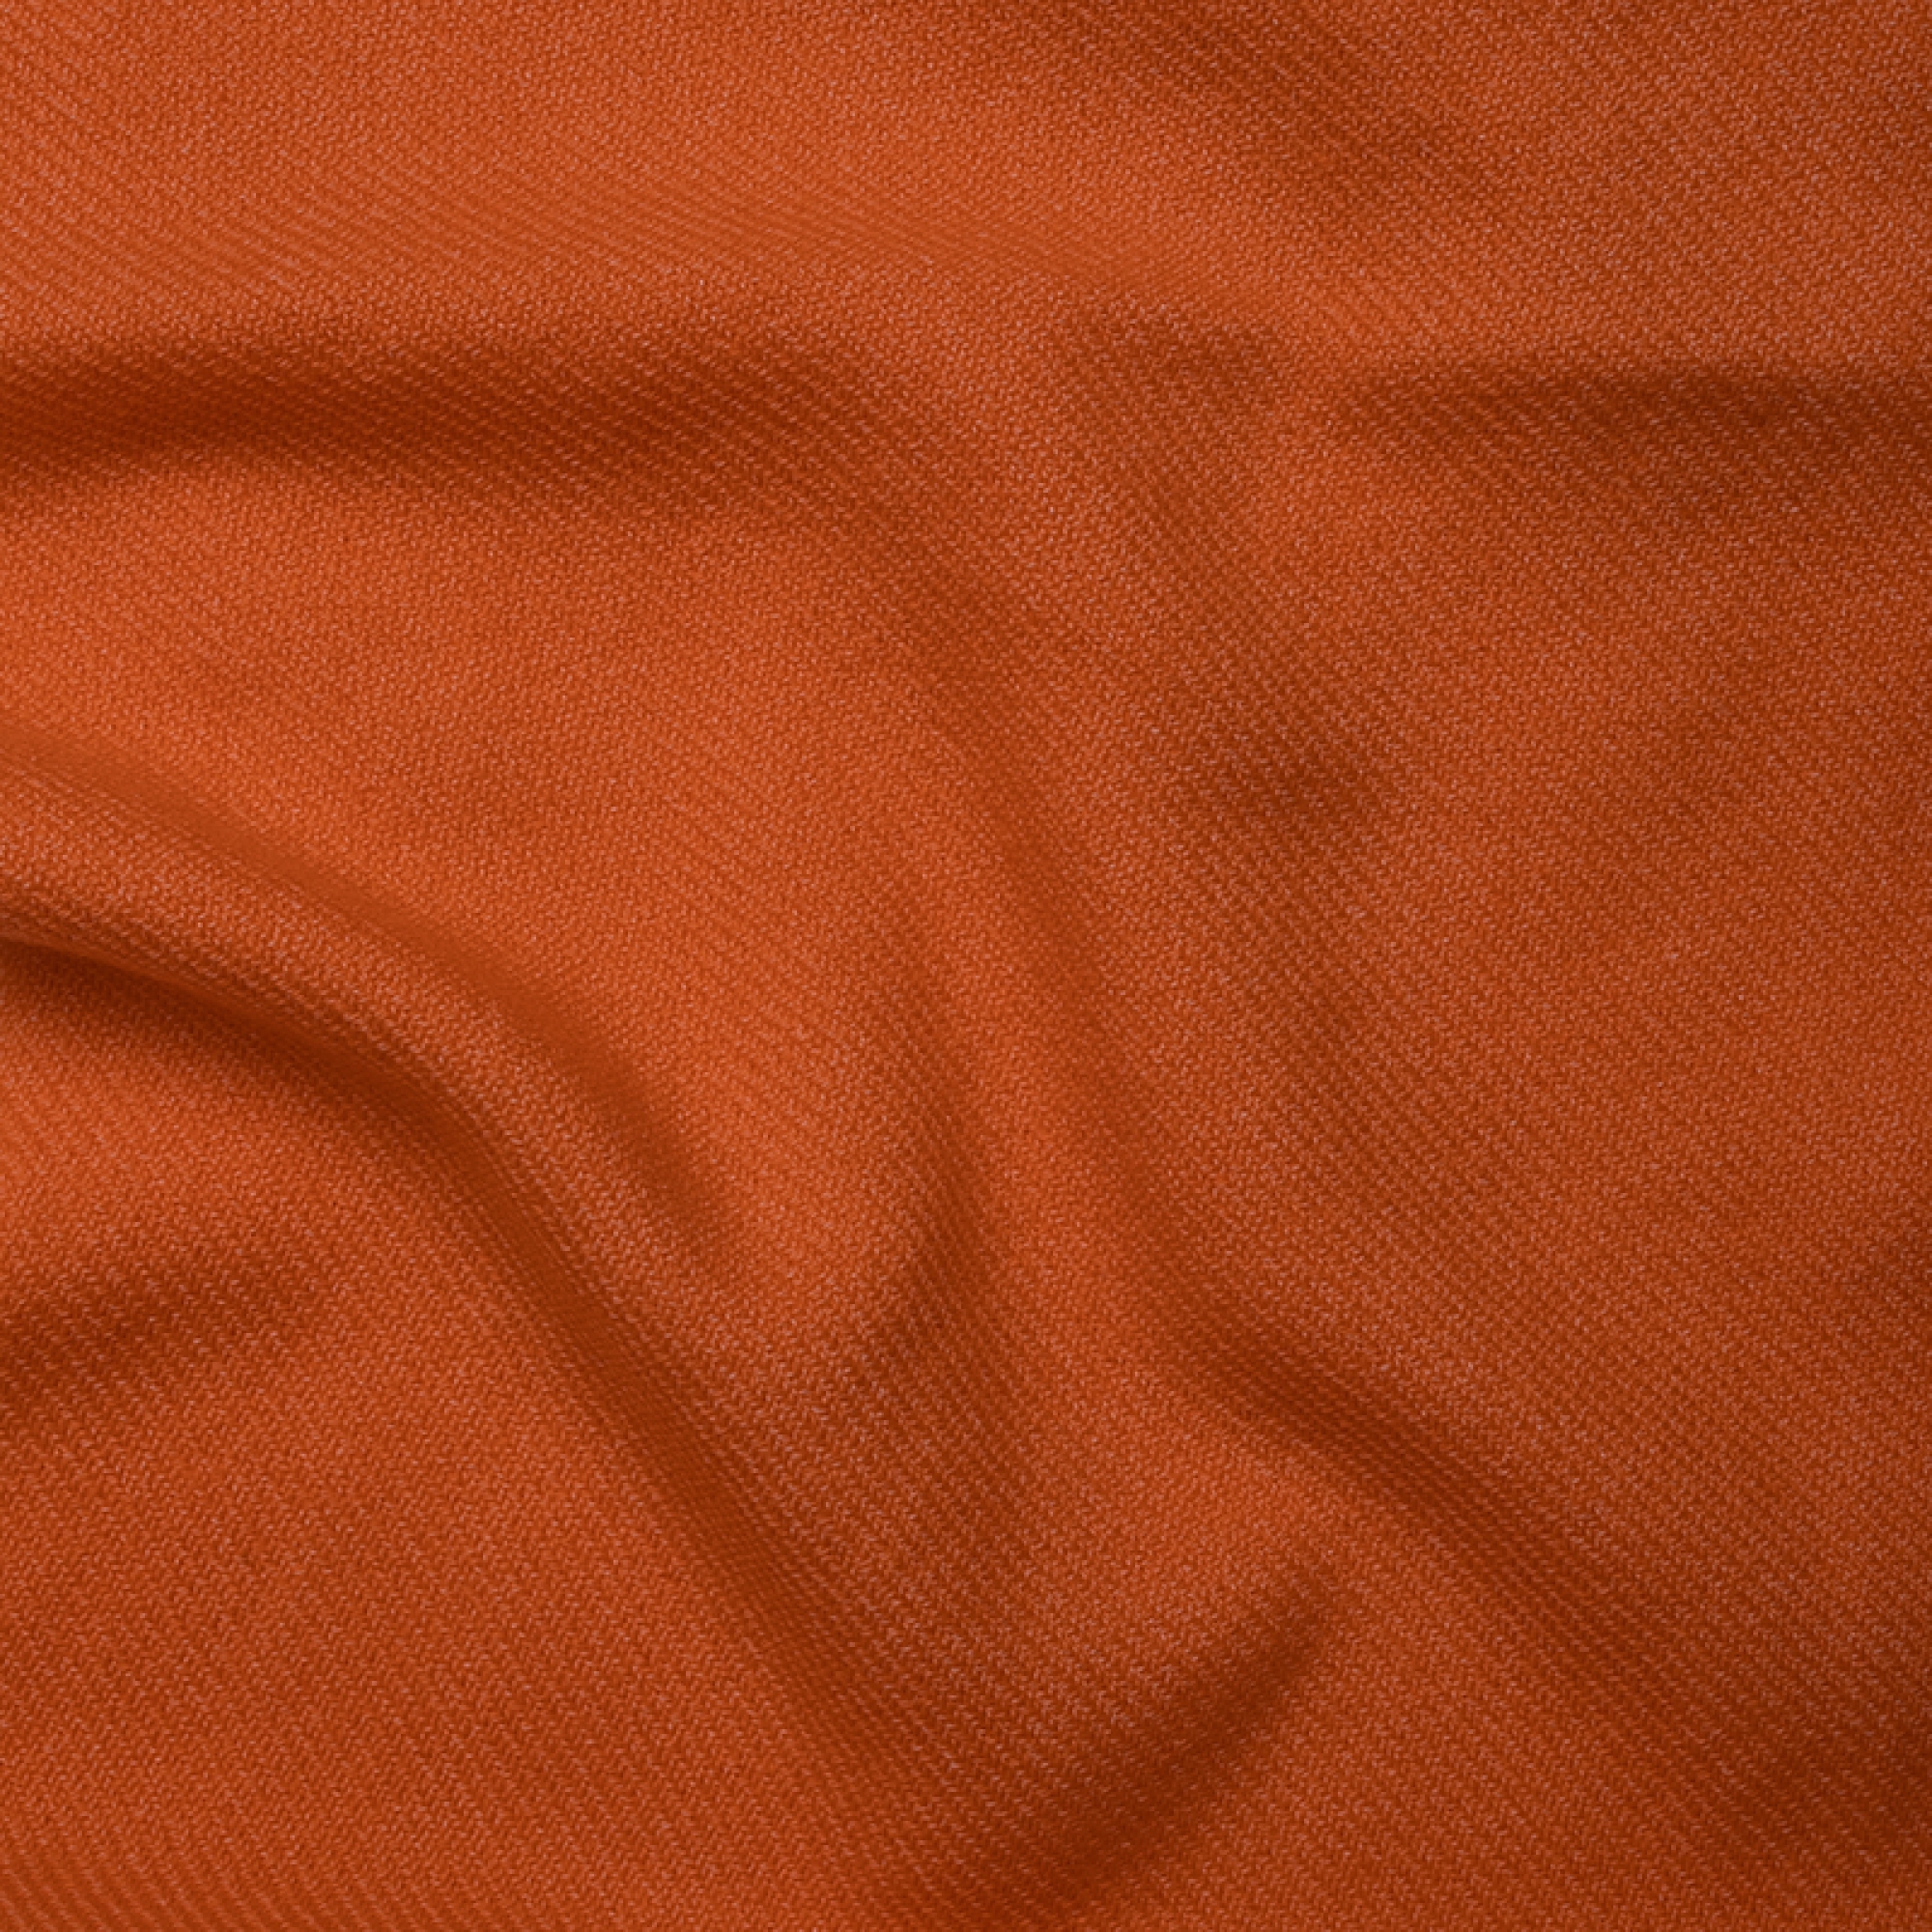 Cachemire accessoires couvertures plaids toodoo plain xl 240 x 260 orange 240 x 260 cm